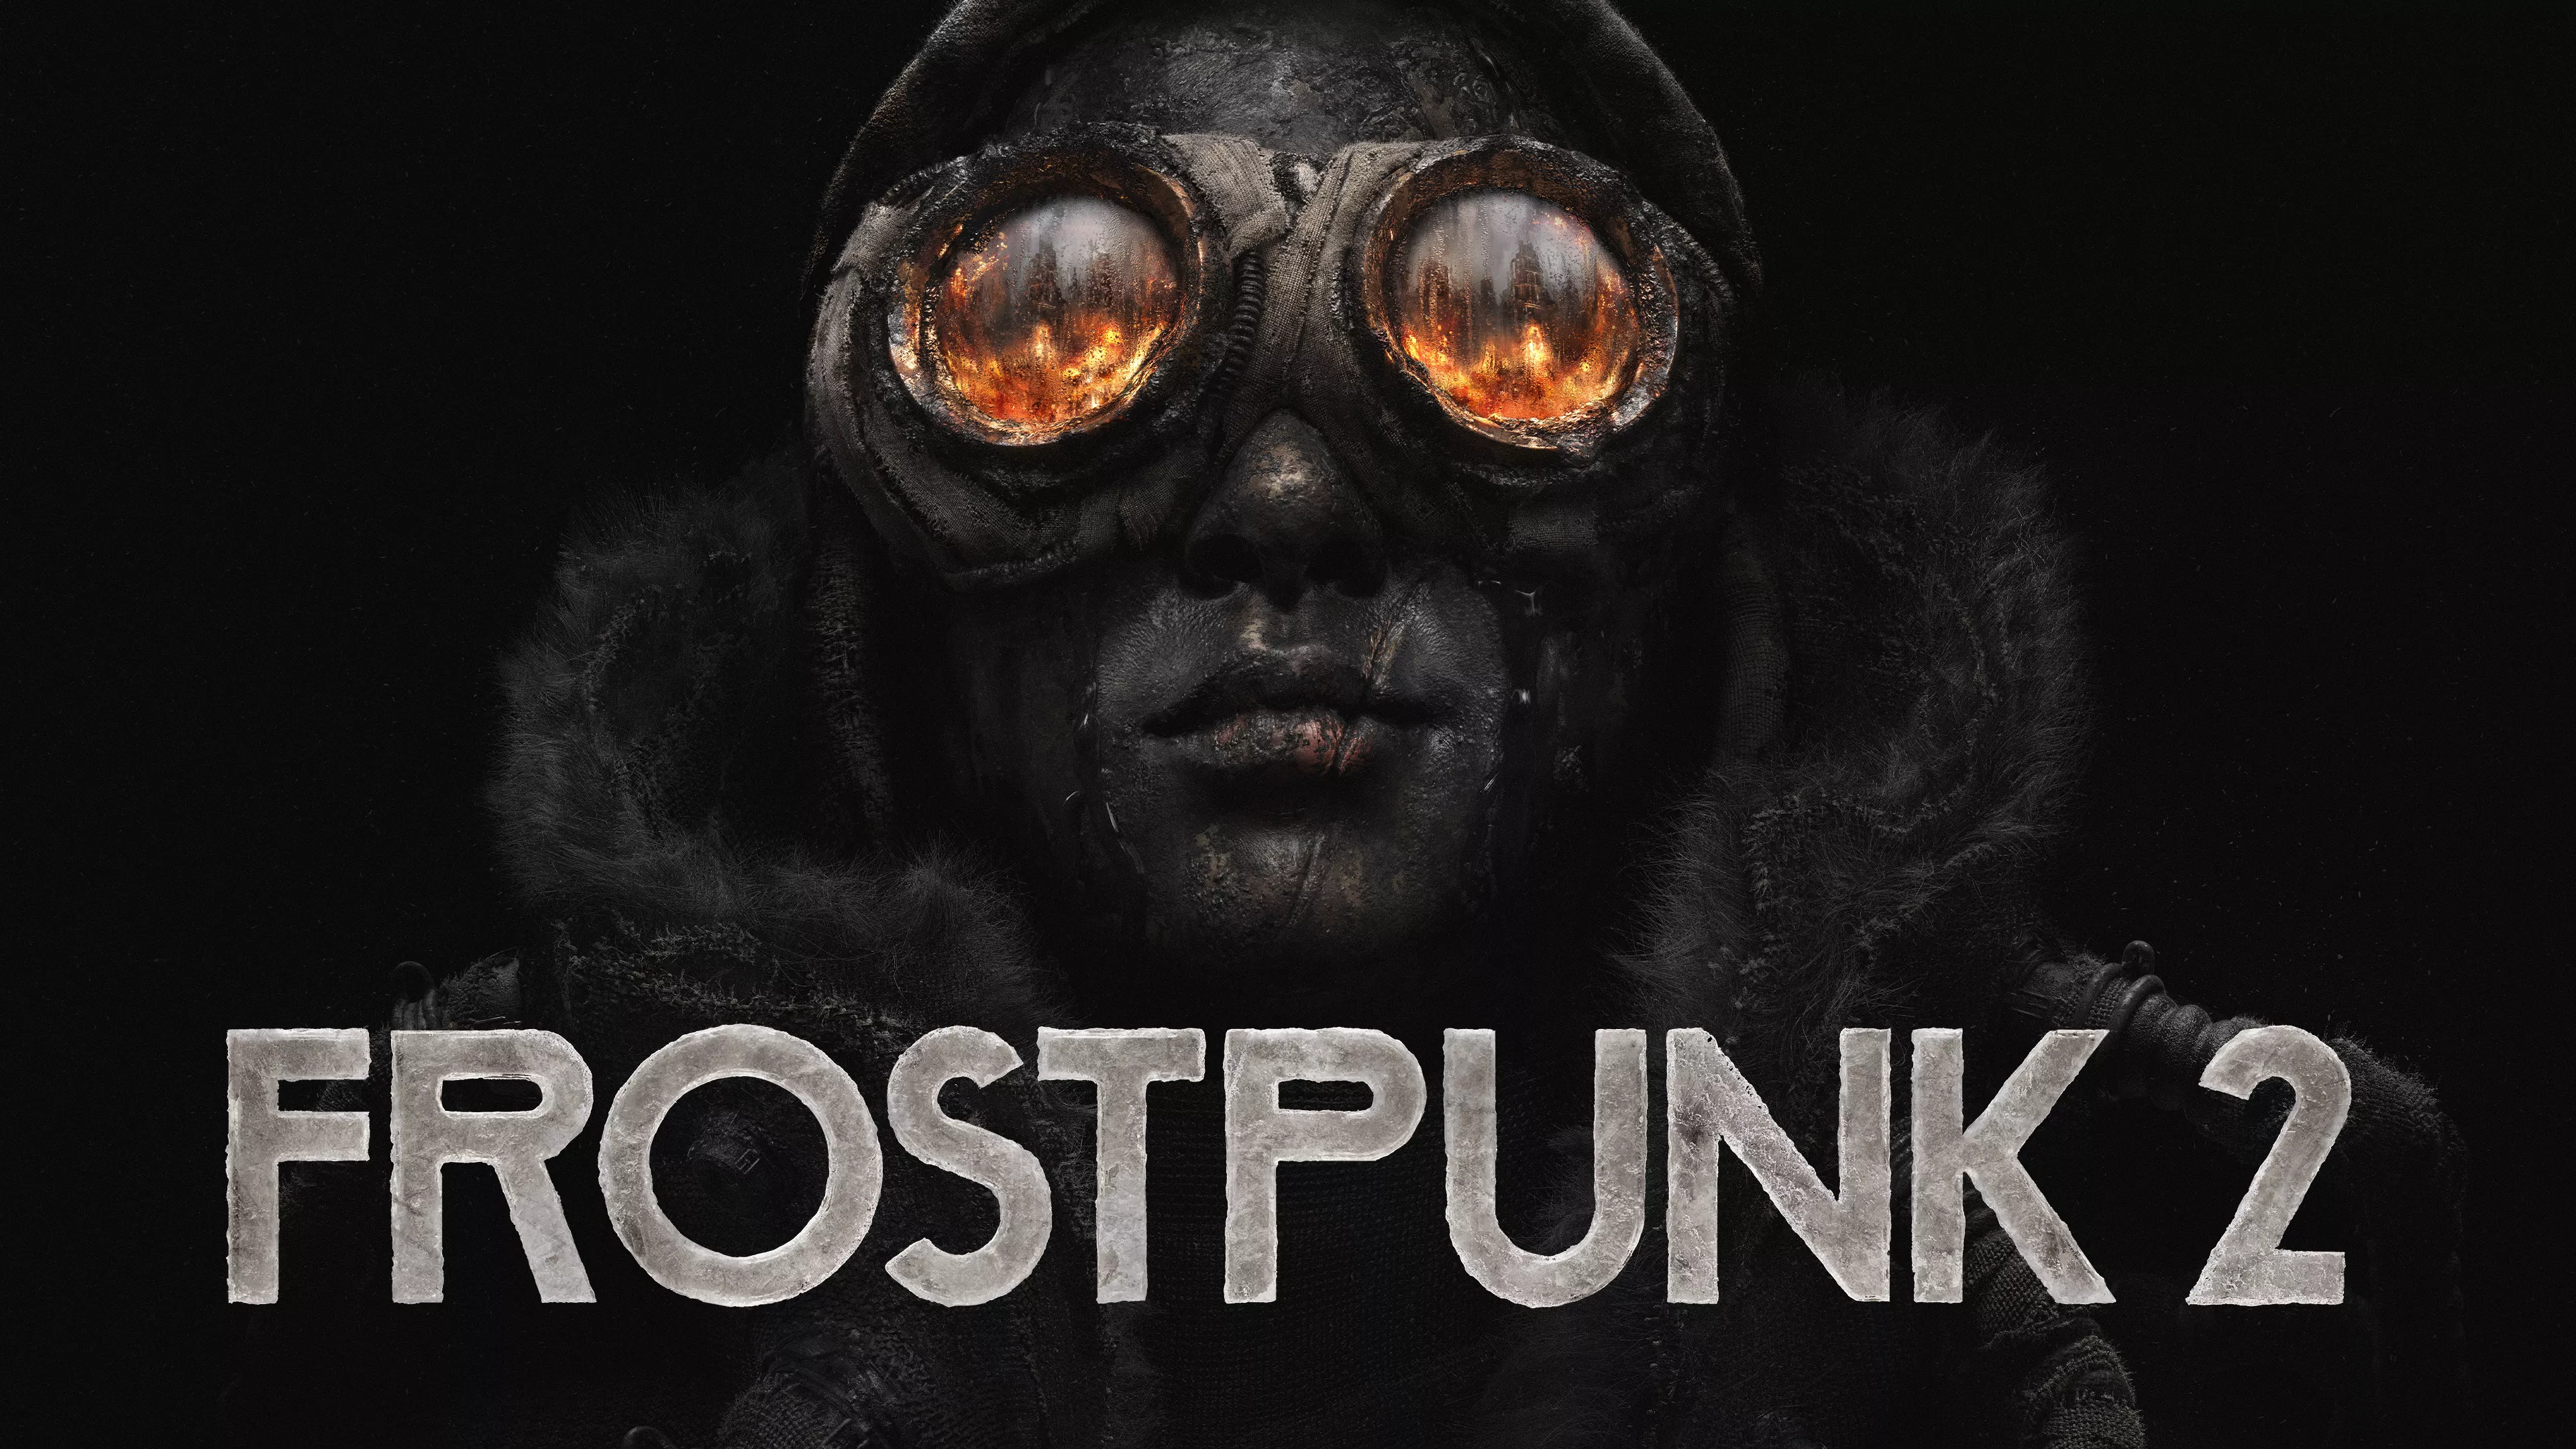 Gameplay-Trailer zu Frostpunk 2 veröffentlicht Heropic